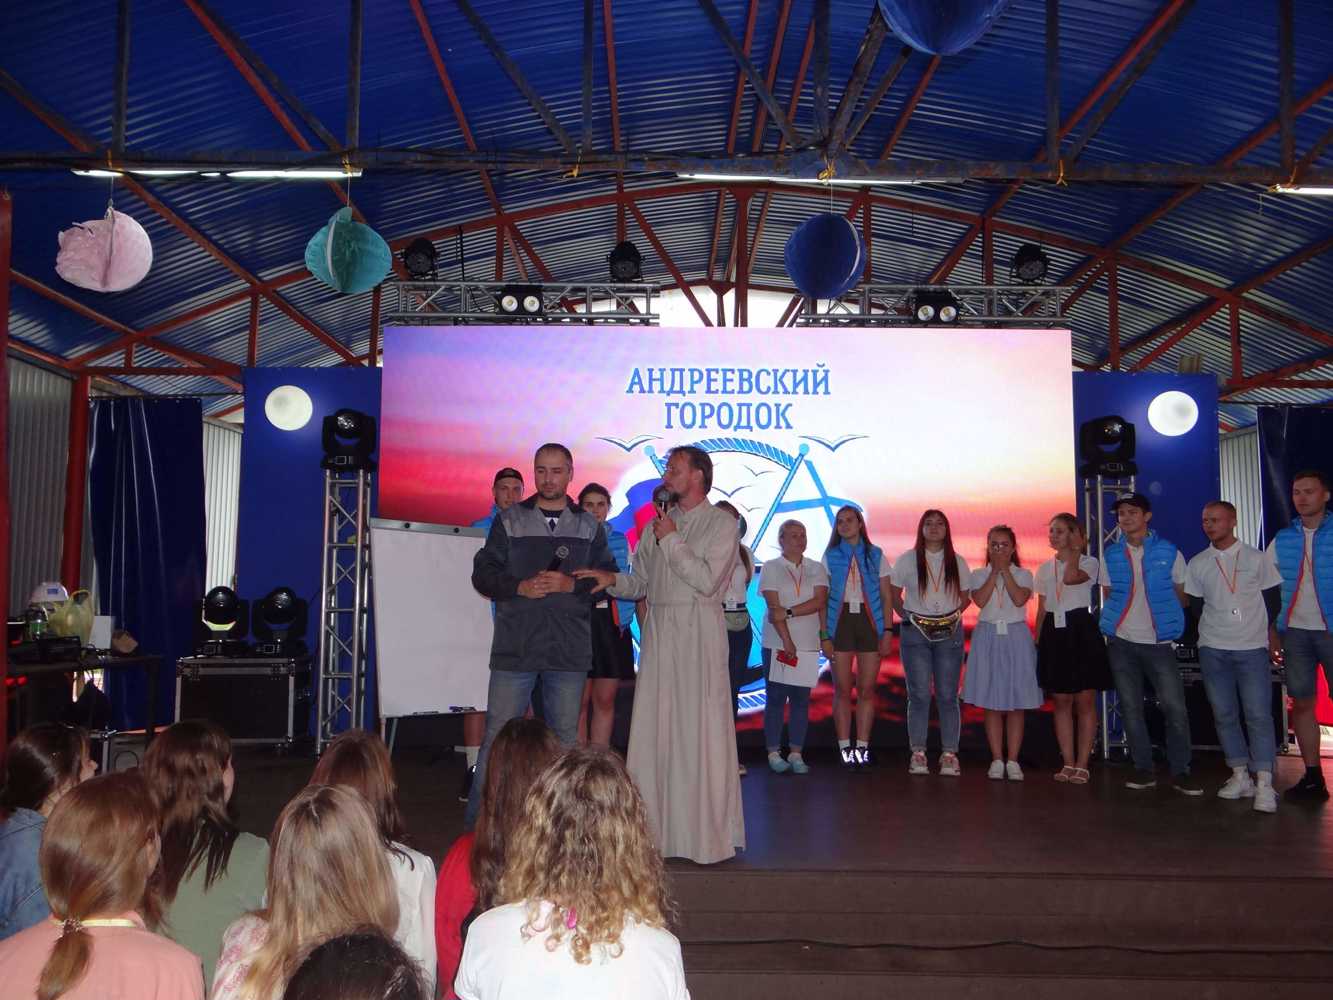 Молодежный форум "Андреевский городок" пройдет во Владивостоке.